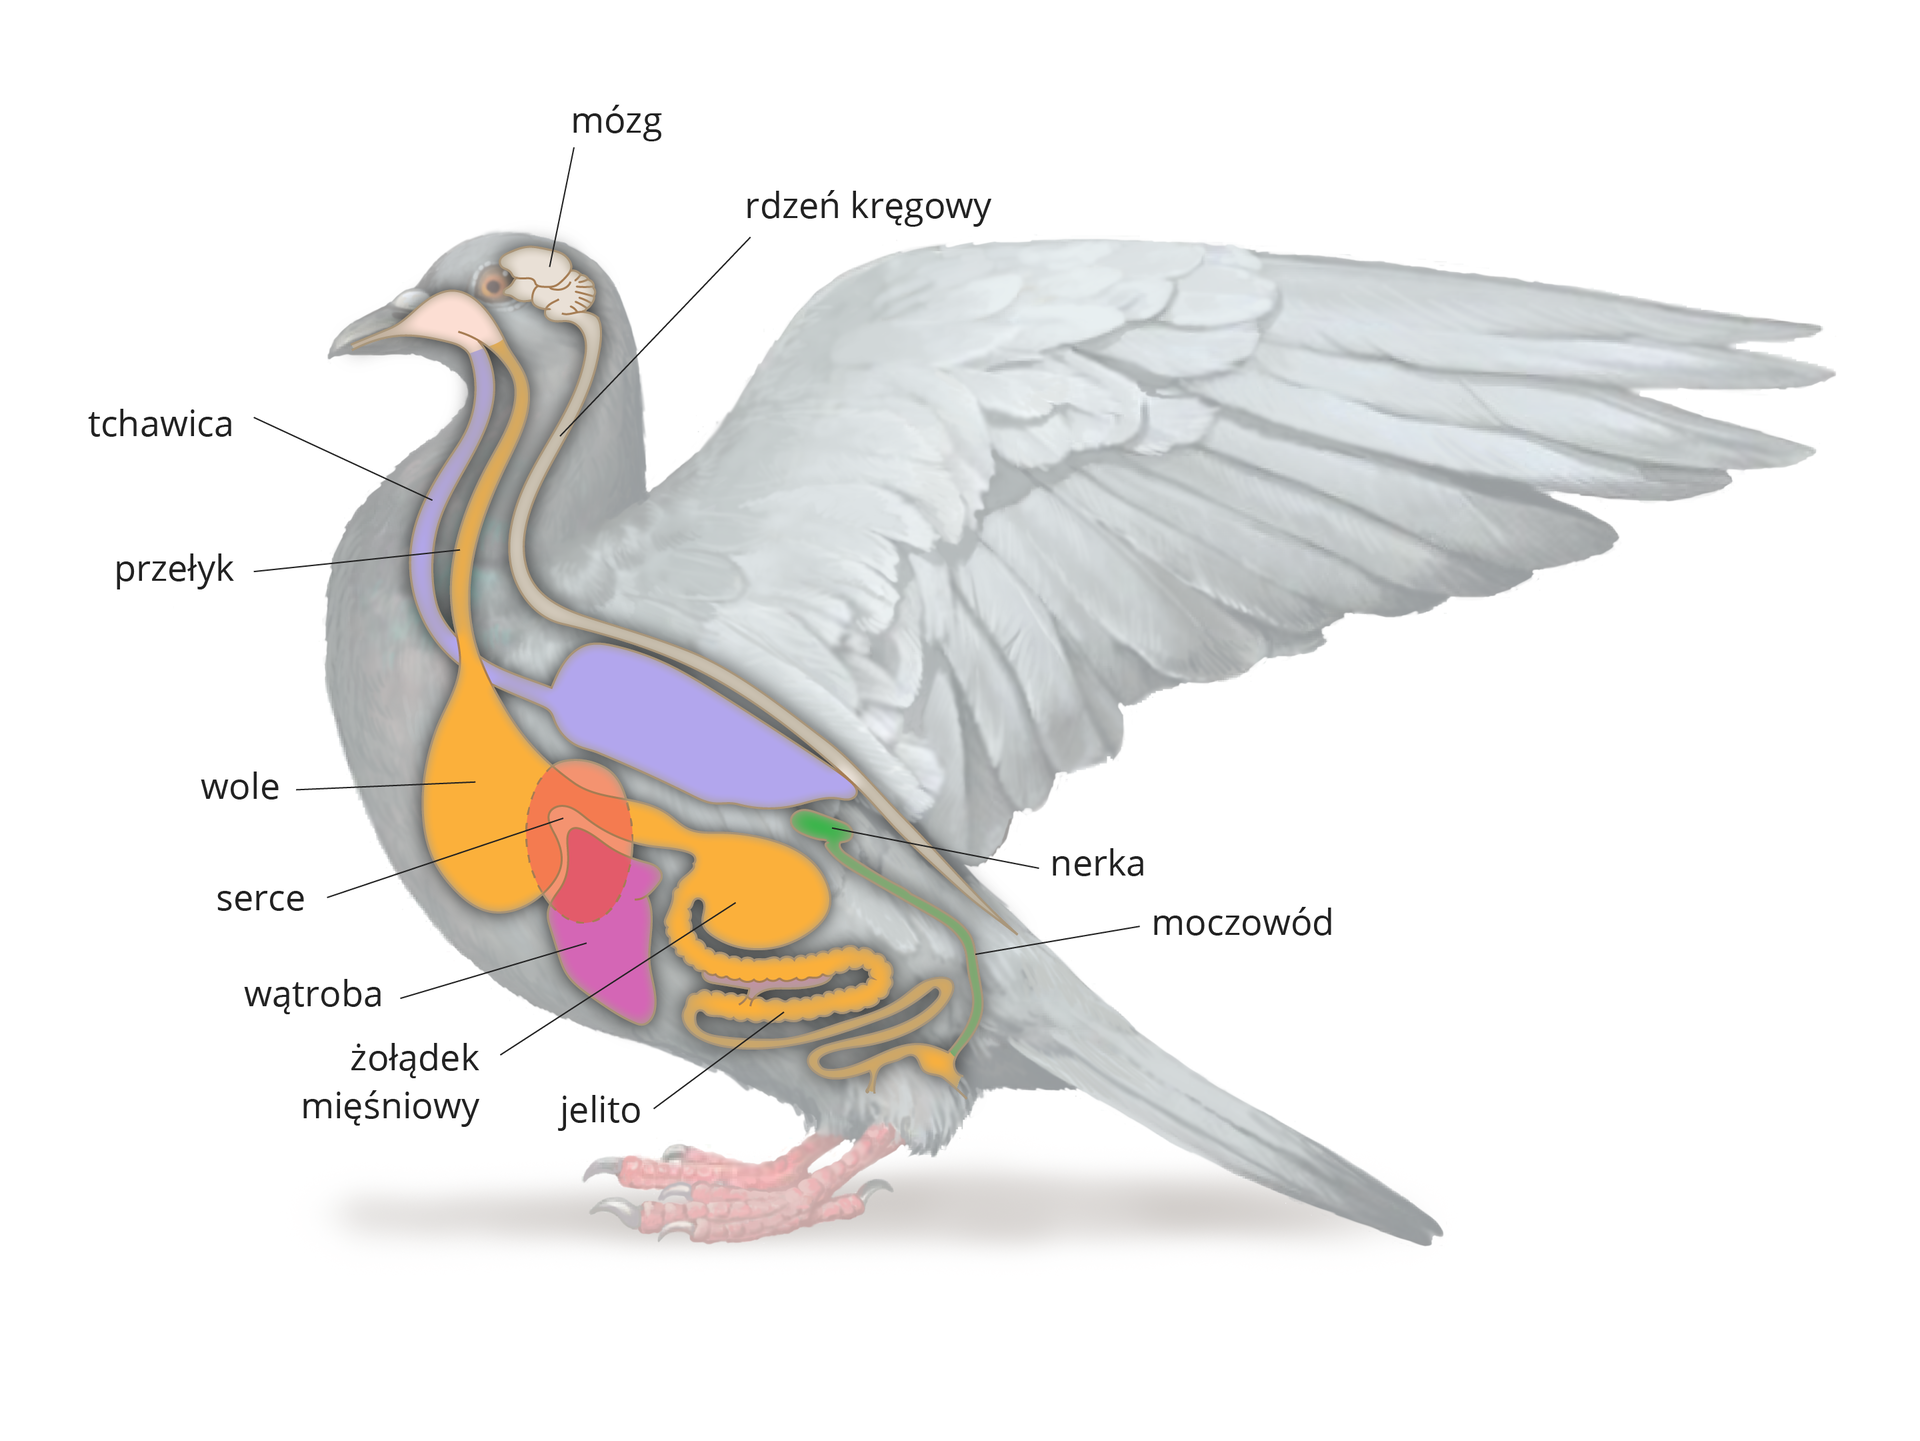 Ilustracja przedstawia szarą sylwetkę gołębia. Wrysowano w nią narządy wewnętrzne, zaznaczone różnymi kolorami. Od góry białawy mózg i wydłużony rdzeń kręgowy. Od dzioba dwa układy. Niebieski oddechowy, czyli tchawica i workowate płuco. Żółty pokarmowy: przełyk, workowate wole, żołądek mięśniowy, jelito. Na układ pokarmowy nałożona liliowa wątroba i różowe serce. Z tyłu zielona nerka i moczowód.